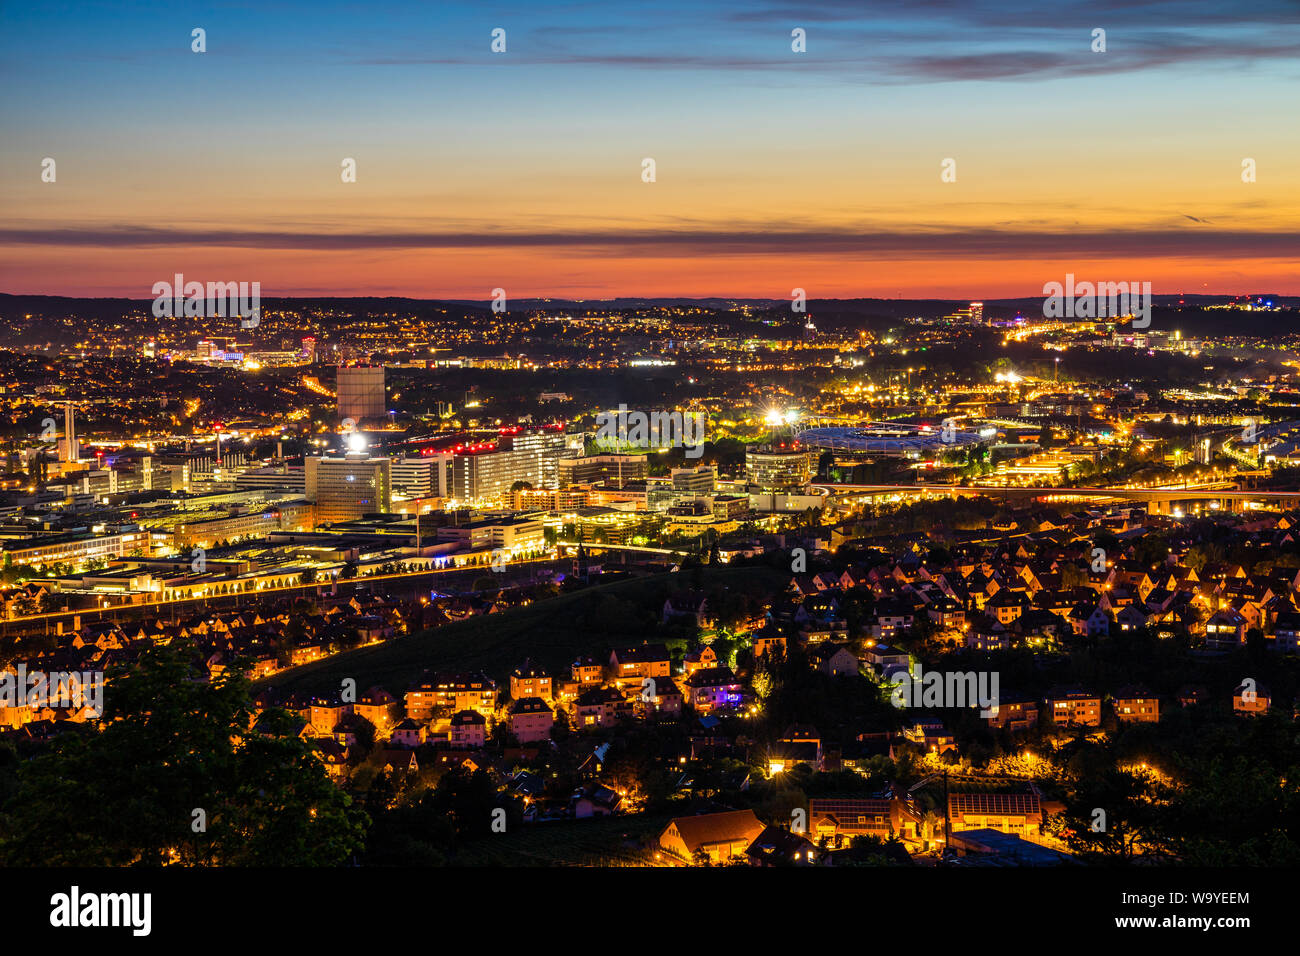 Deutschland, Nacht Lichter der Welt berühmten Stadtteil Bad Canstatt Stadion der Stuttgarter Innenstadt Stadt in magischen twilight Atmosphäre Stockfoto